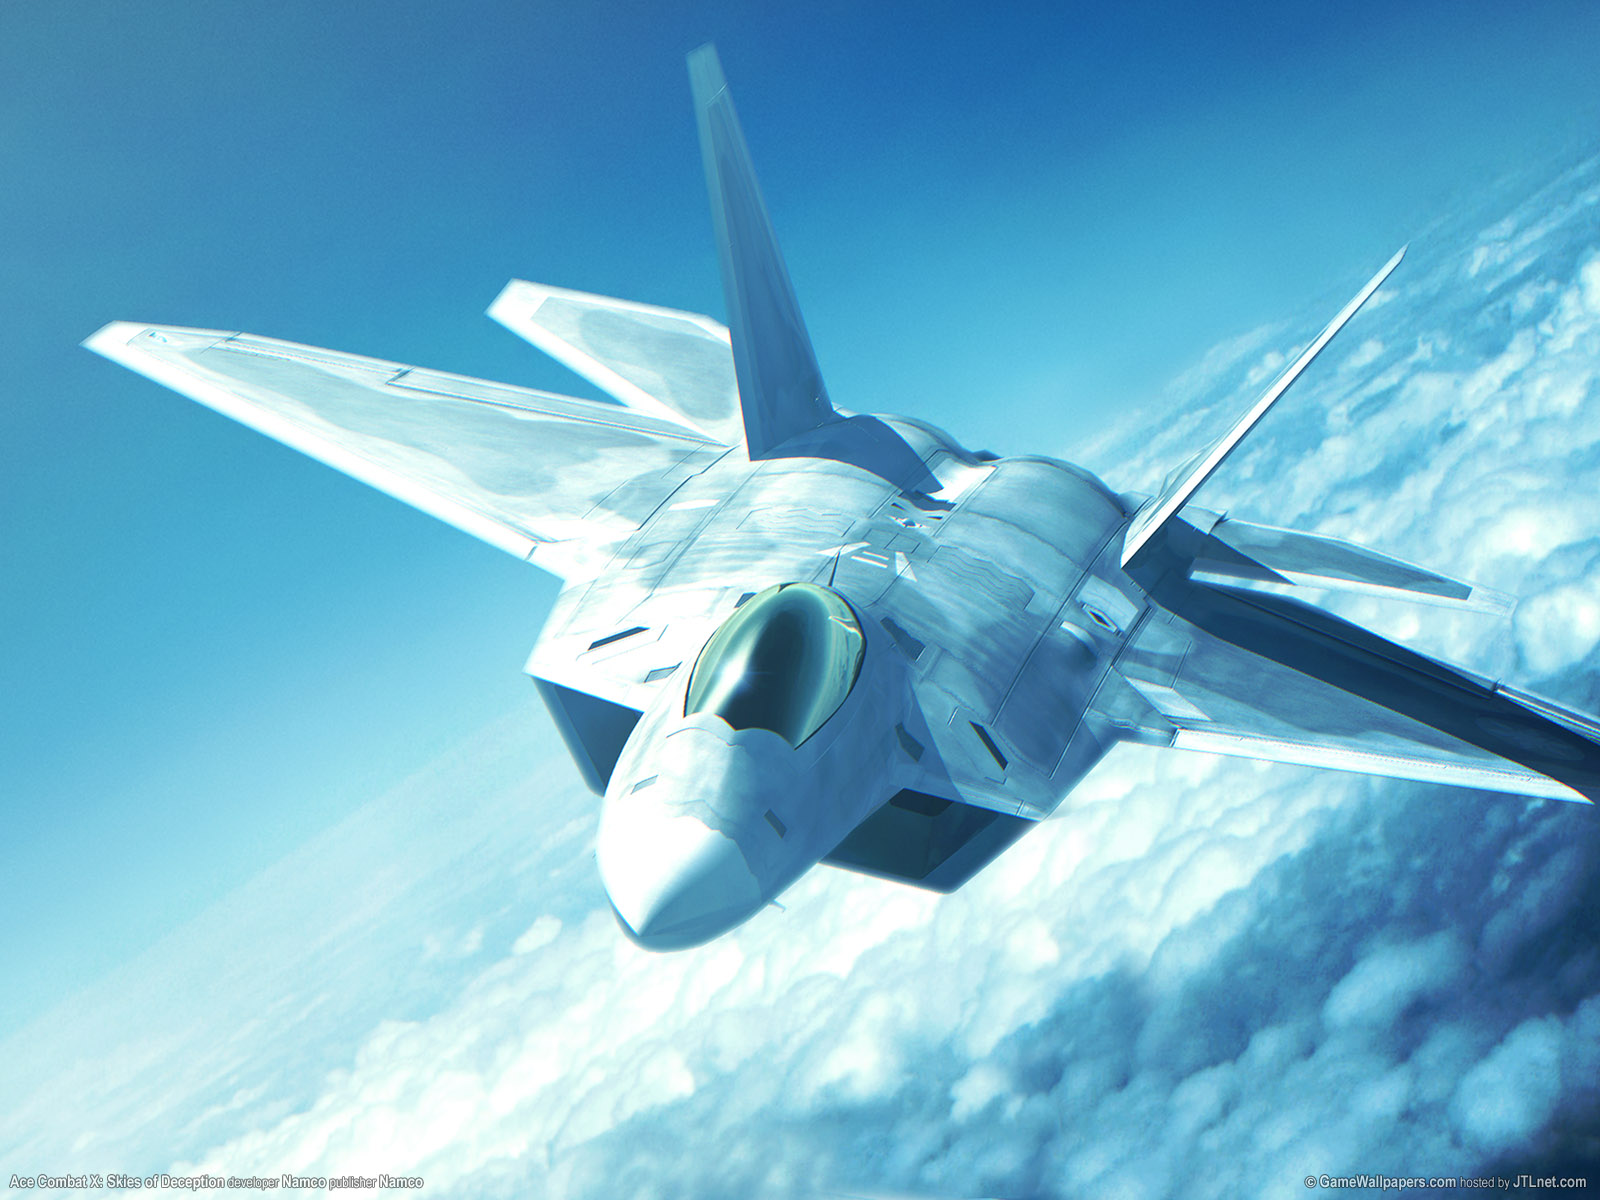 Bakgrundsbilder Ace Combat Ace Combat X: Skies of Deception Datorspel spel dataspel